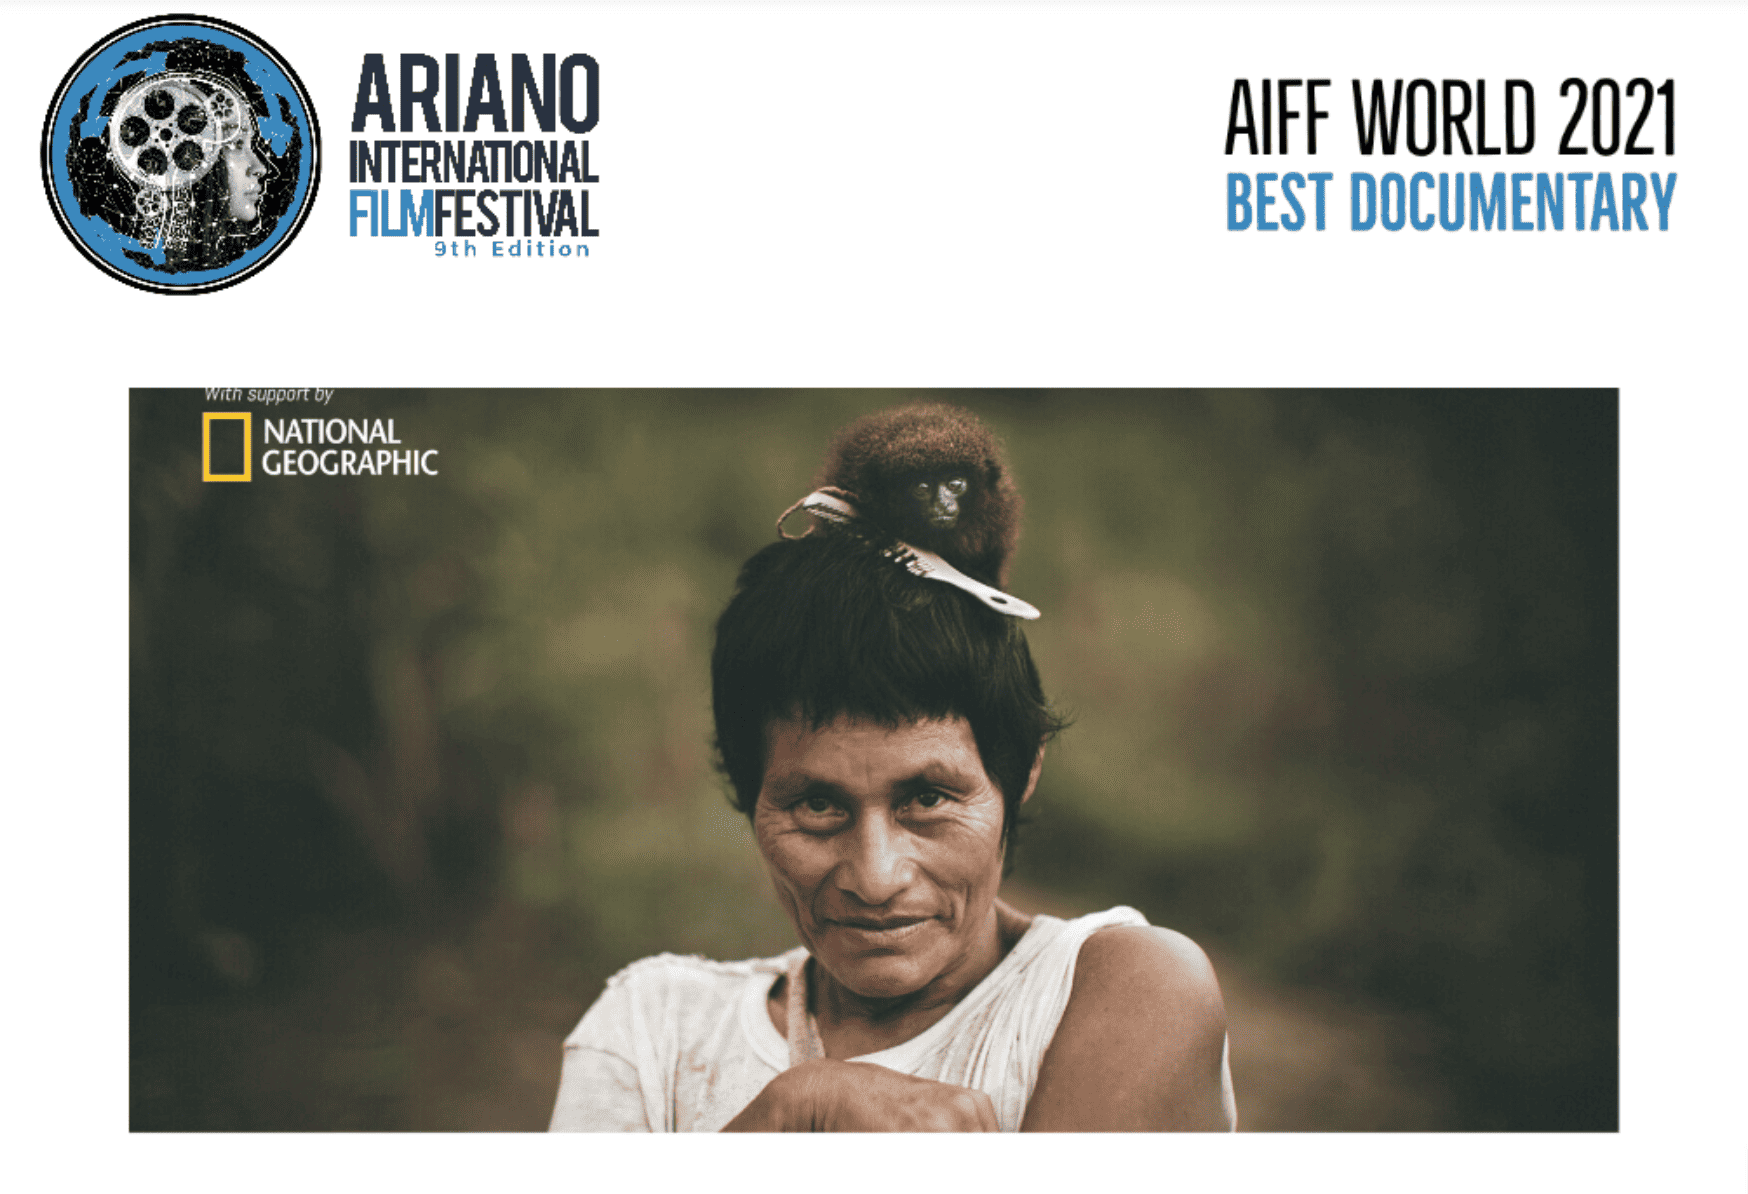 Pacha Kuti wins Best Documentary at Ariano International Film Festival 2021